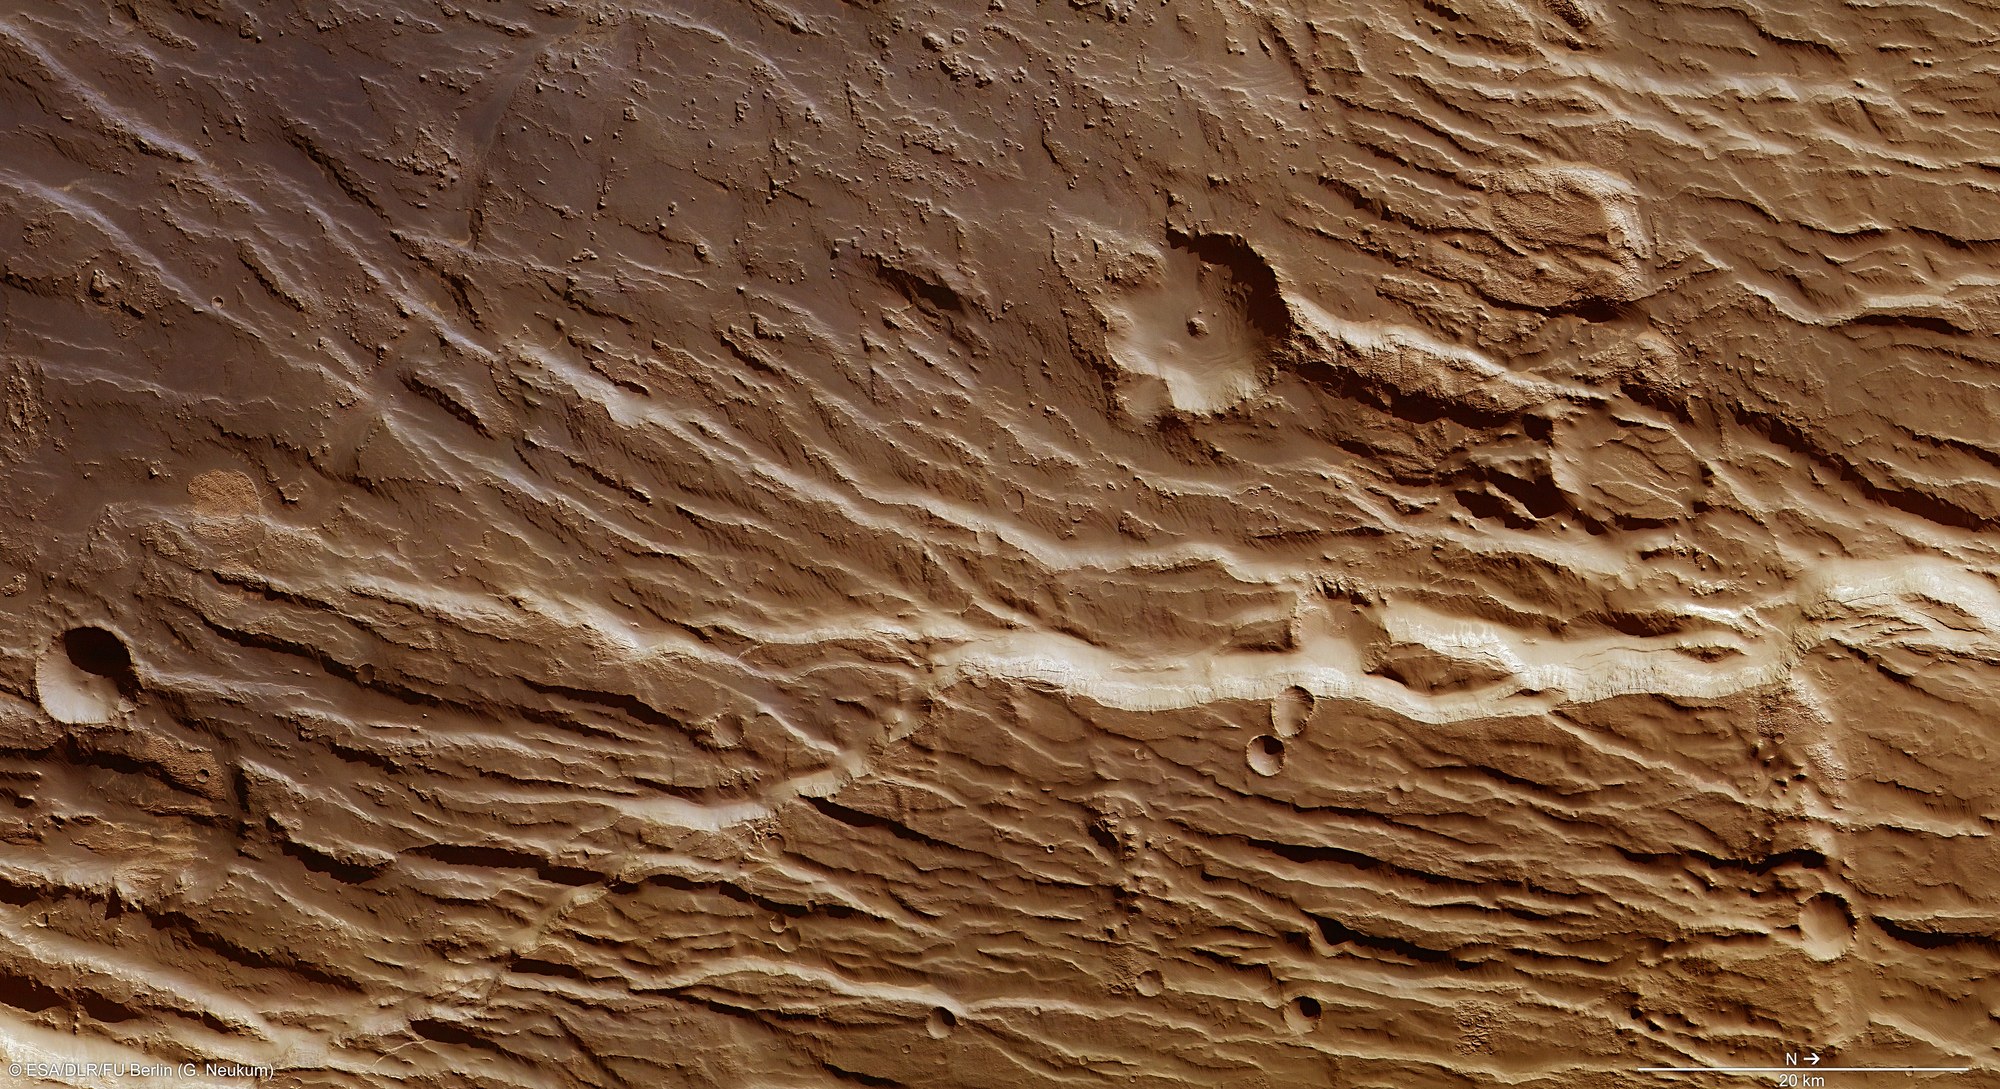 Teil der Abbruchkante Claritas Rupes auf dem Mars